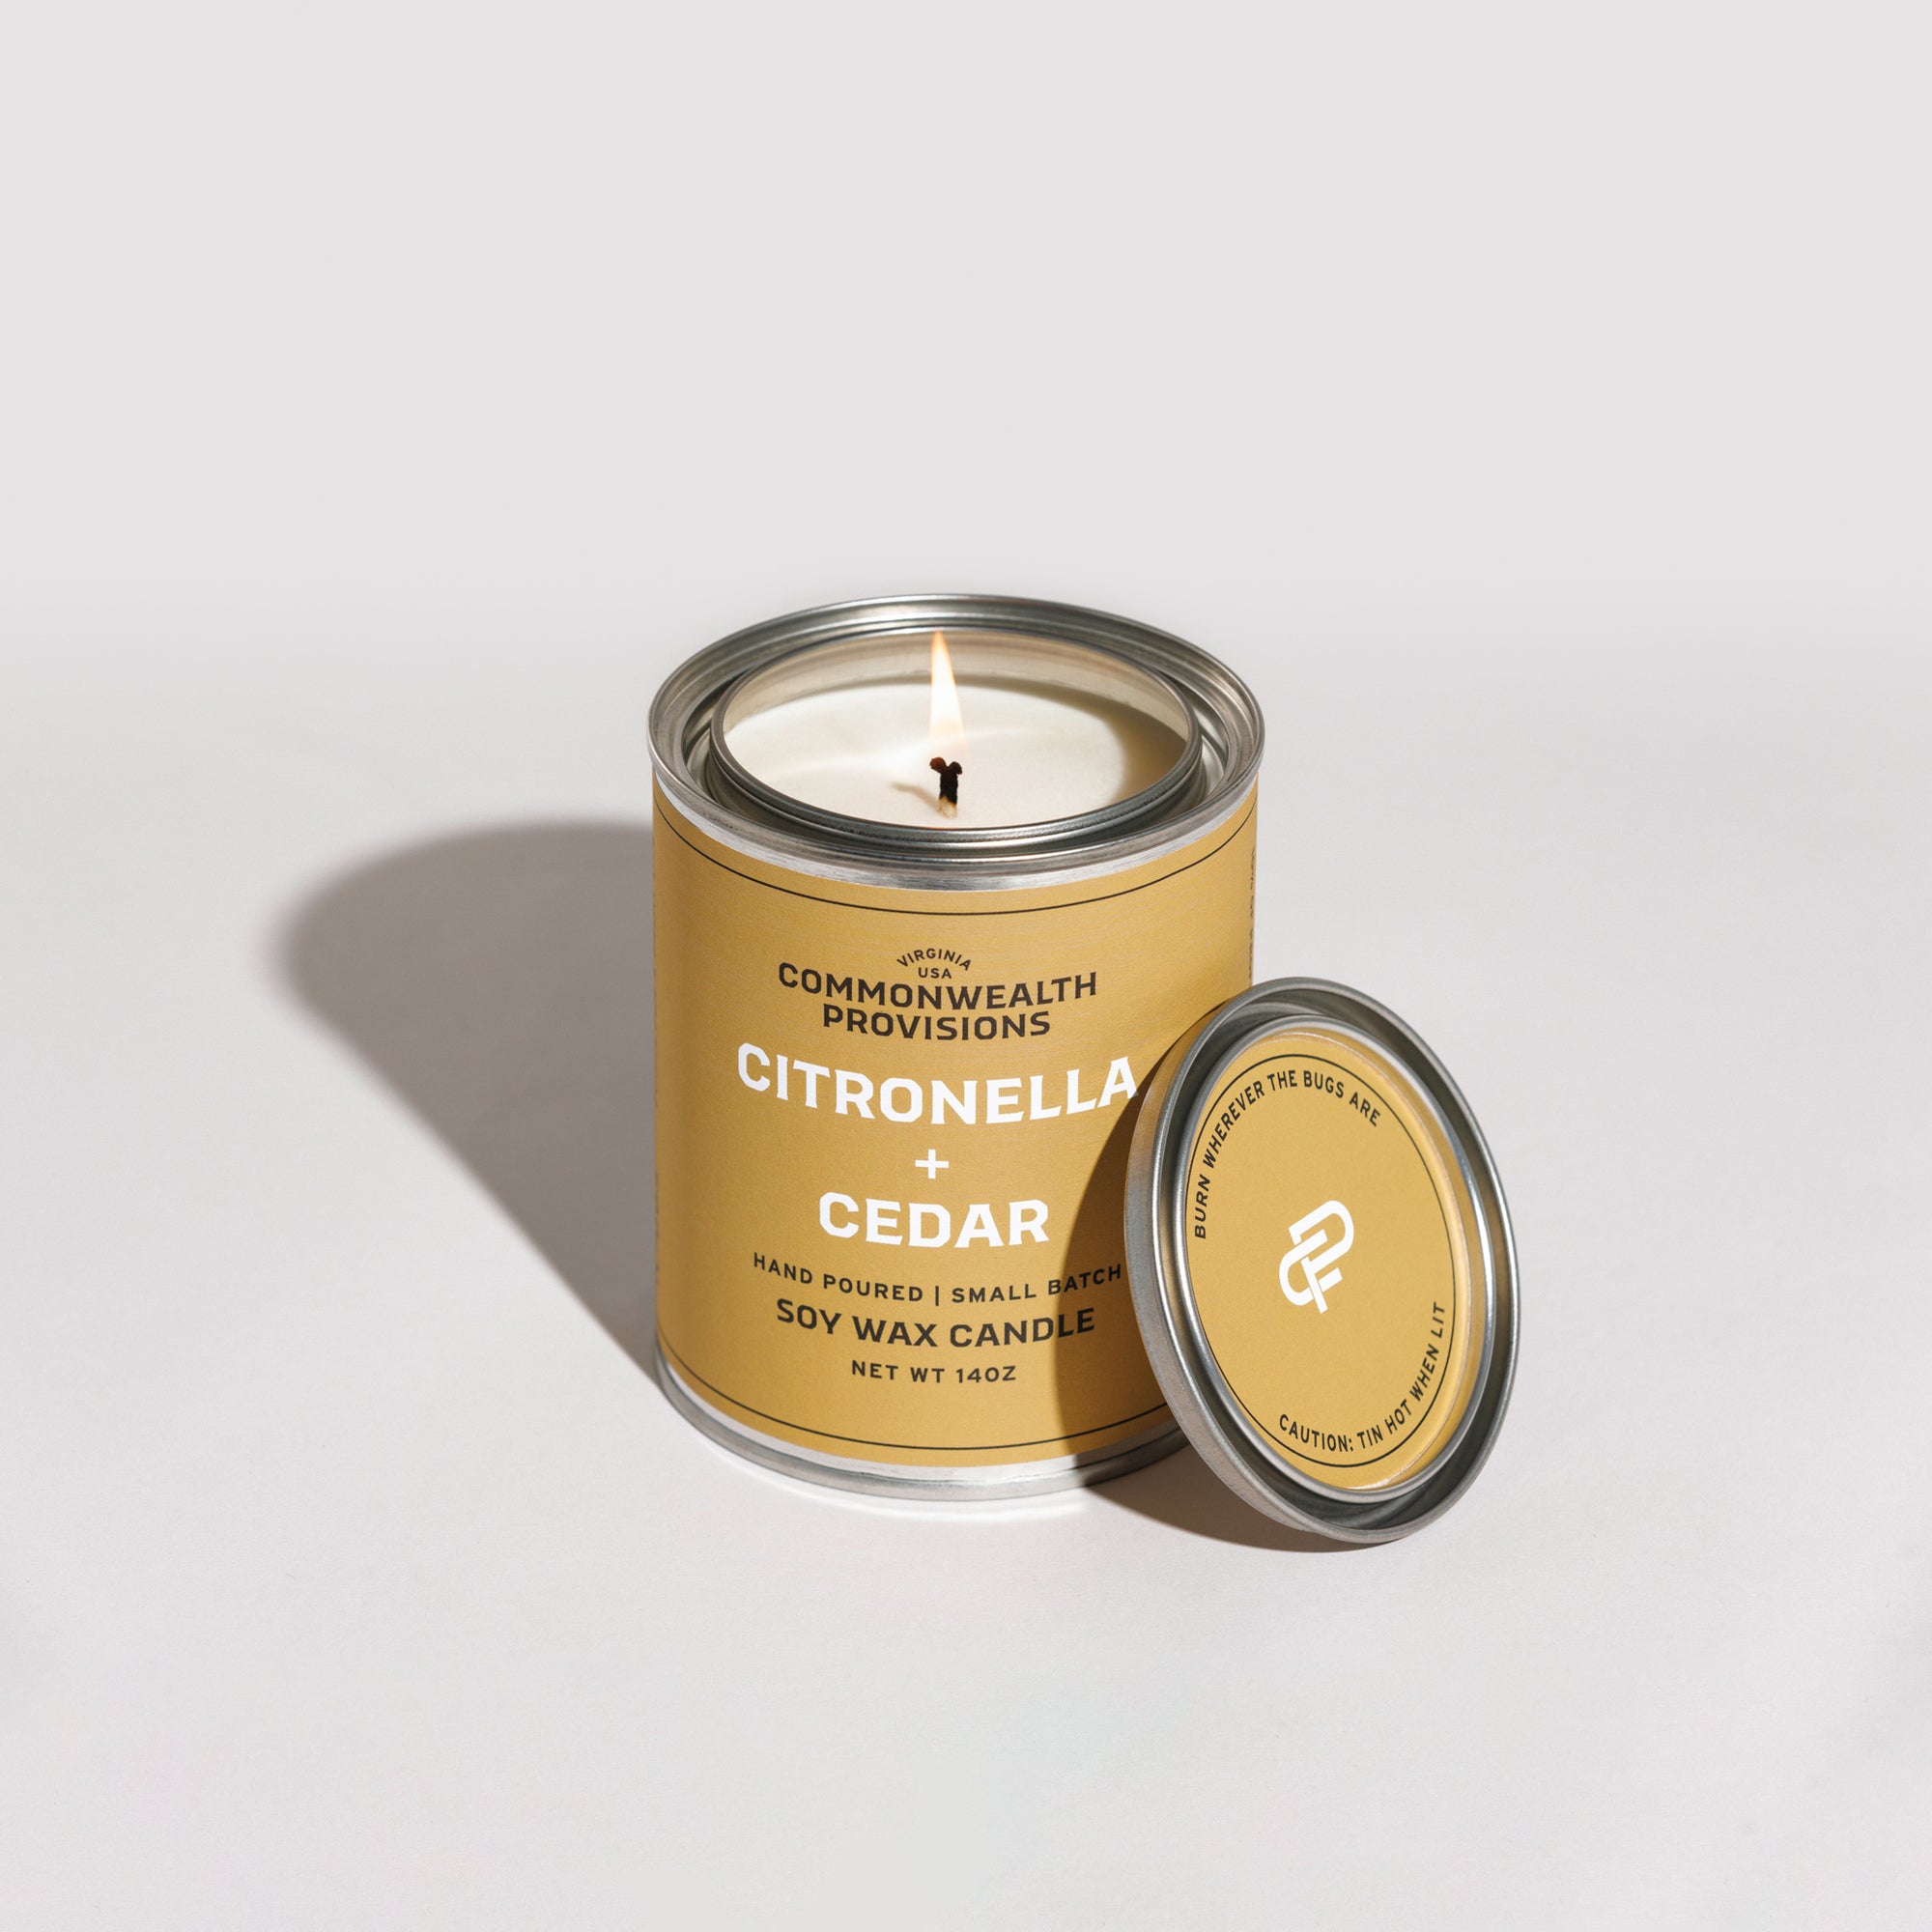 Citronella + Cedar Candle | Commonwealth Provisions